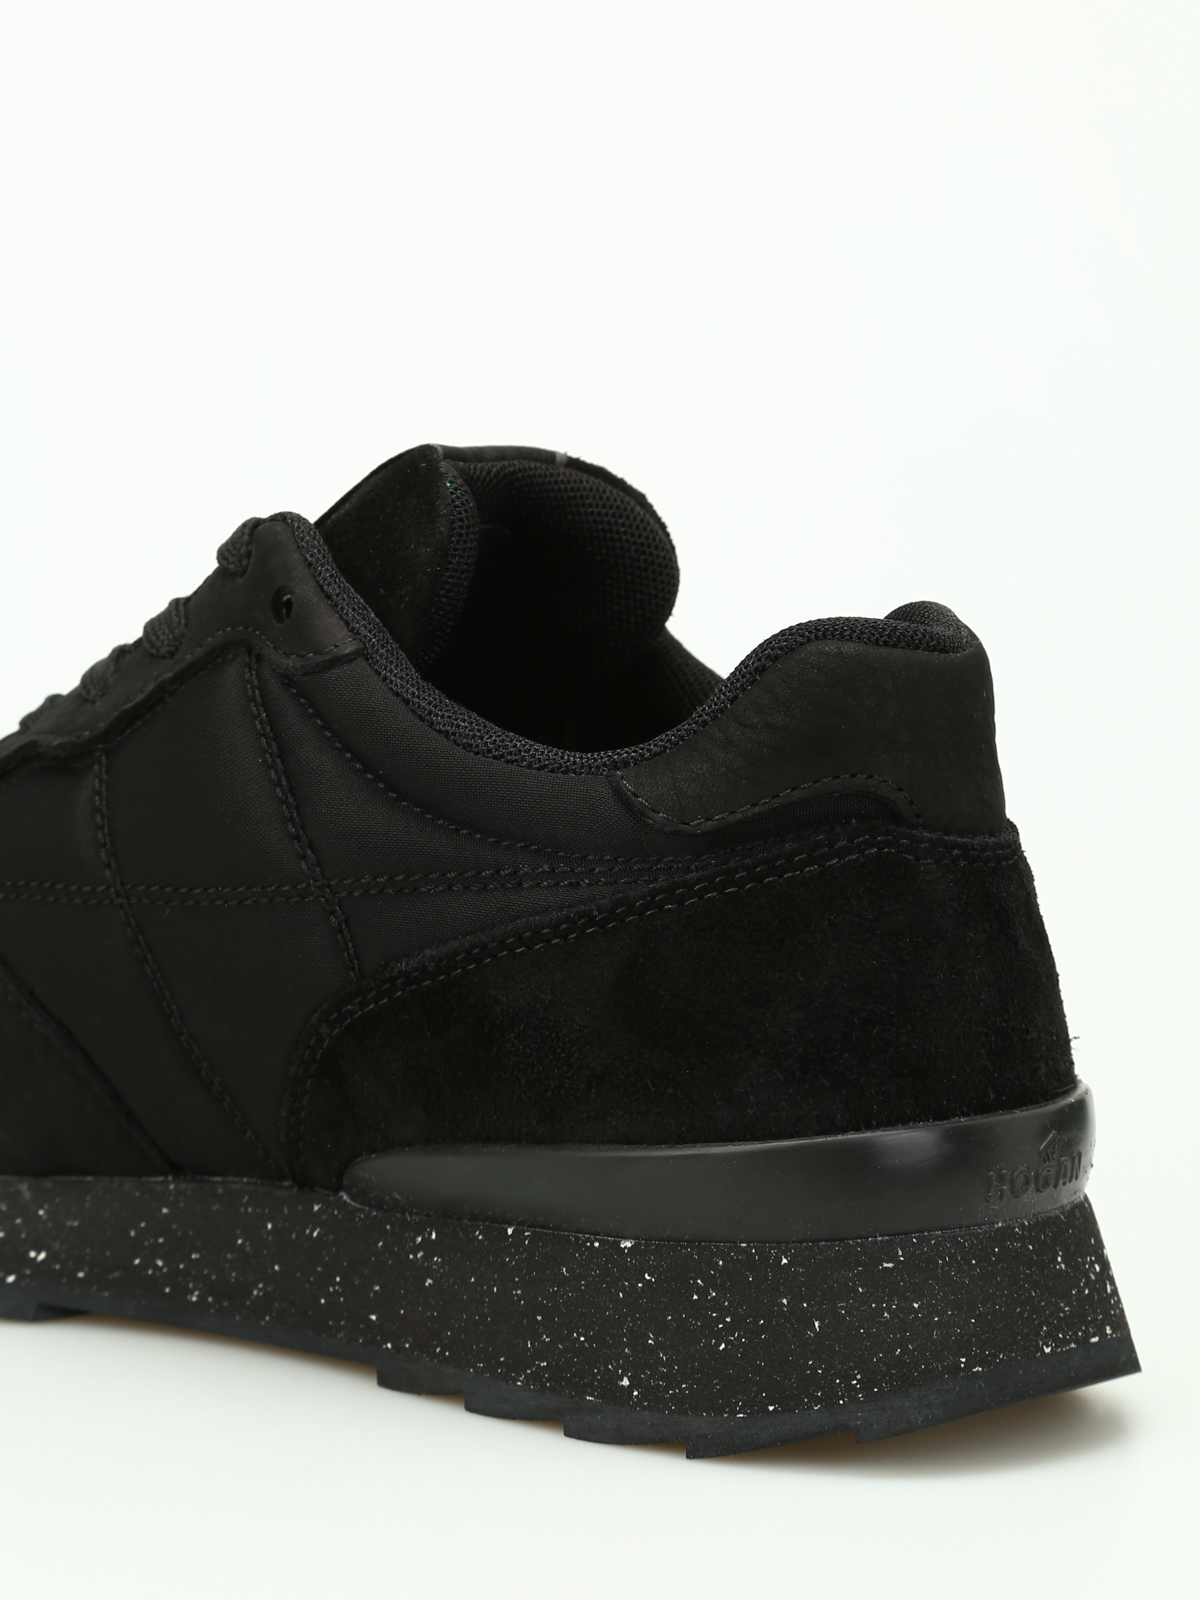 Hogan - R261 black running sneakers 